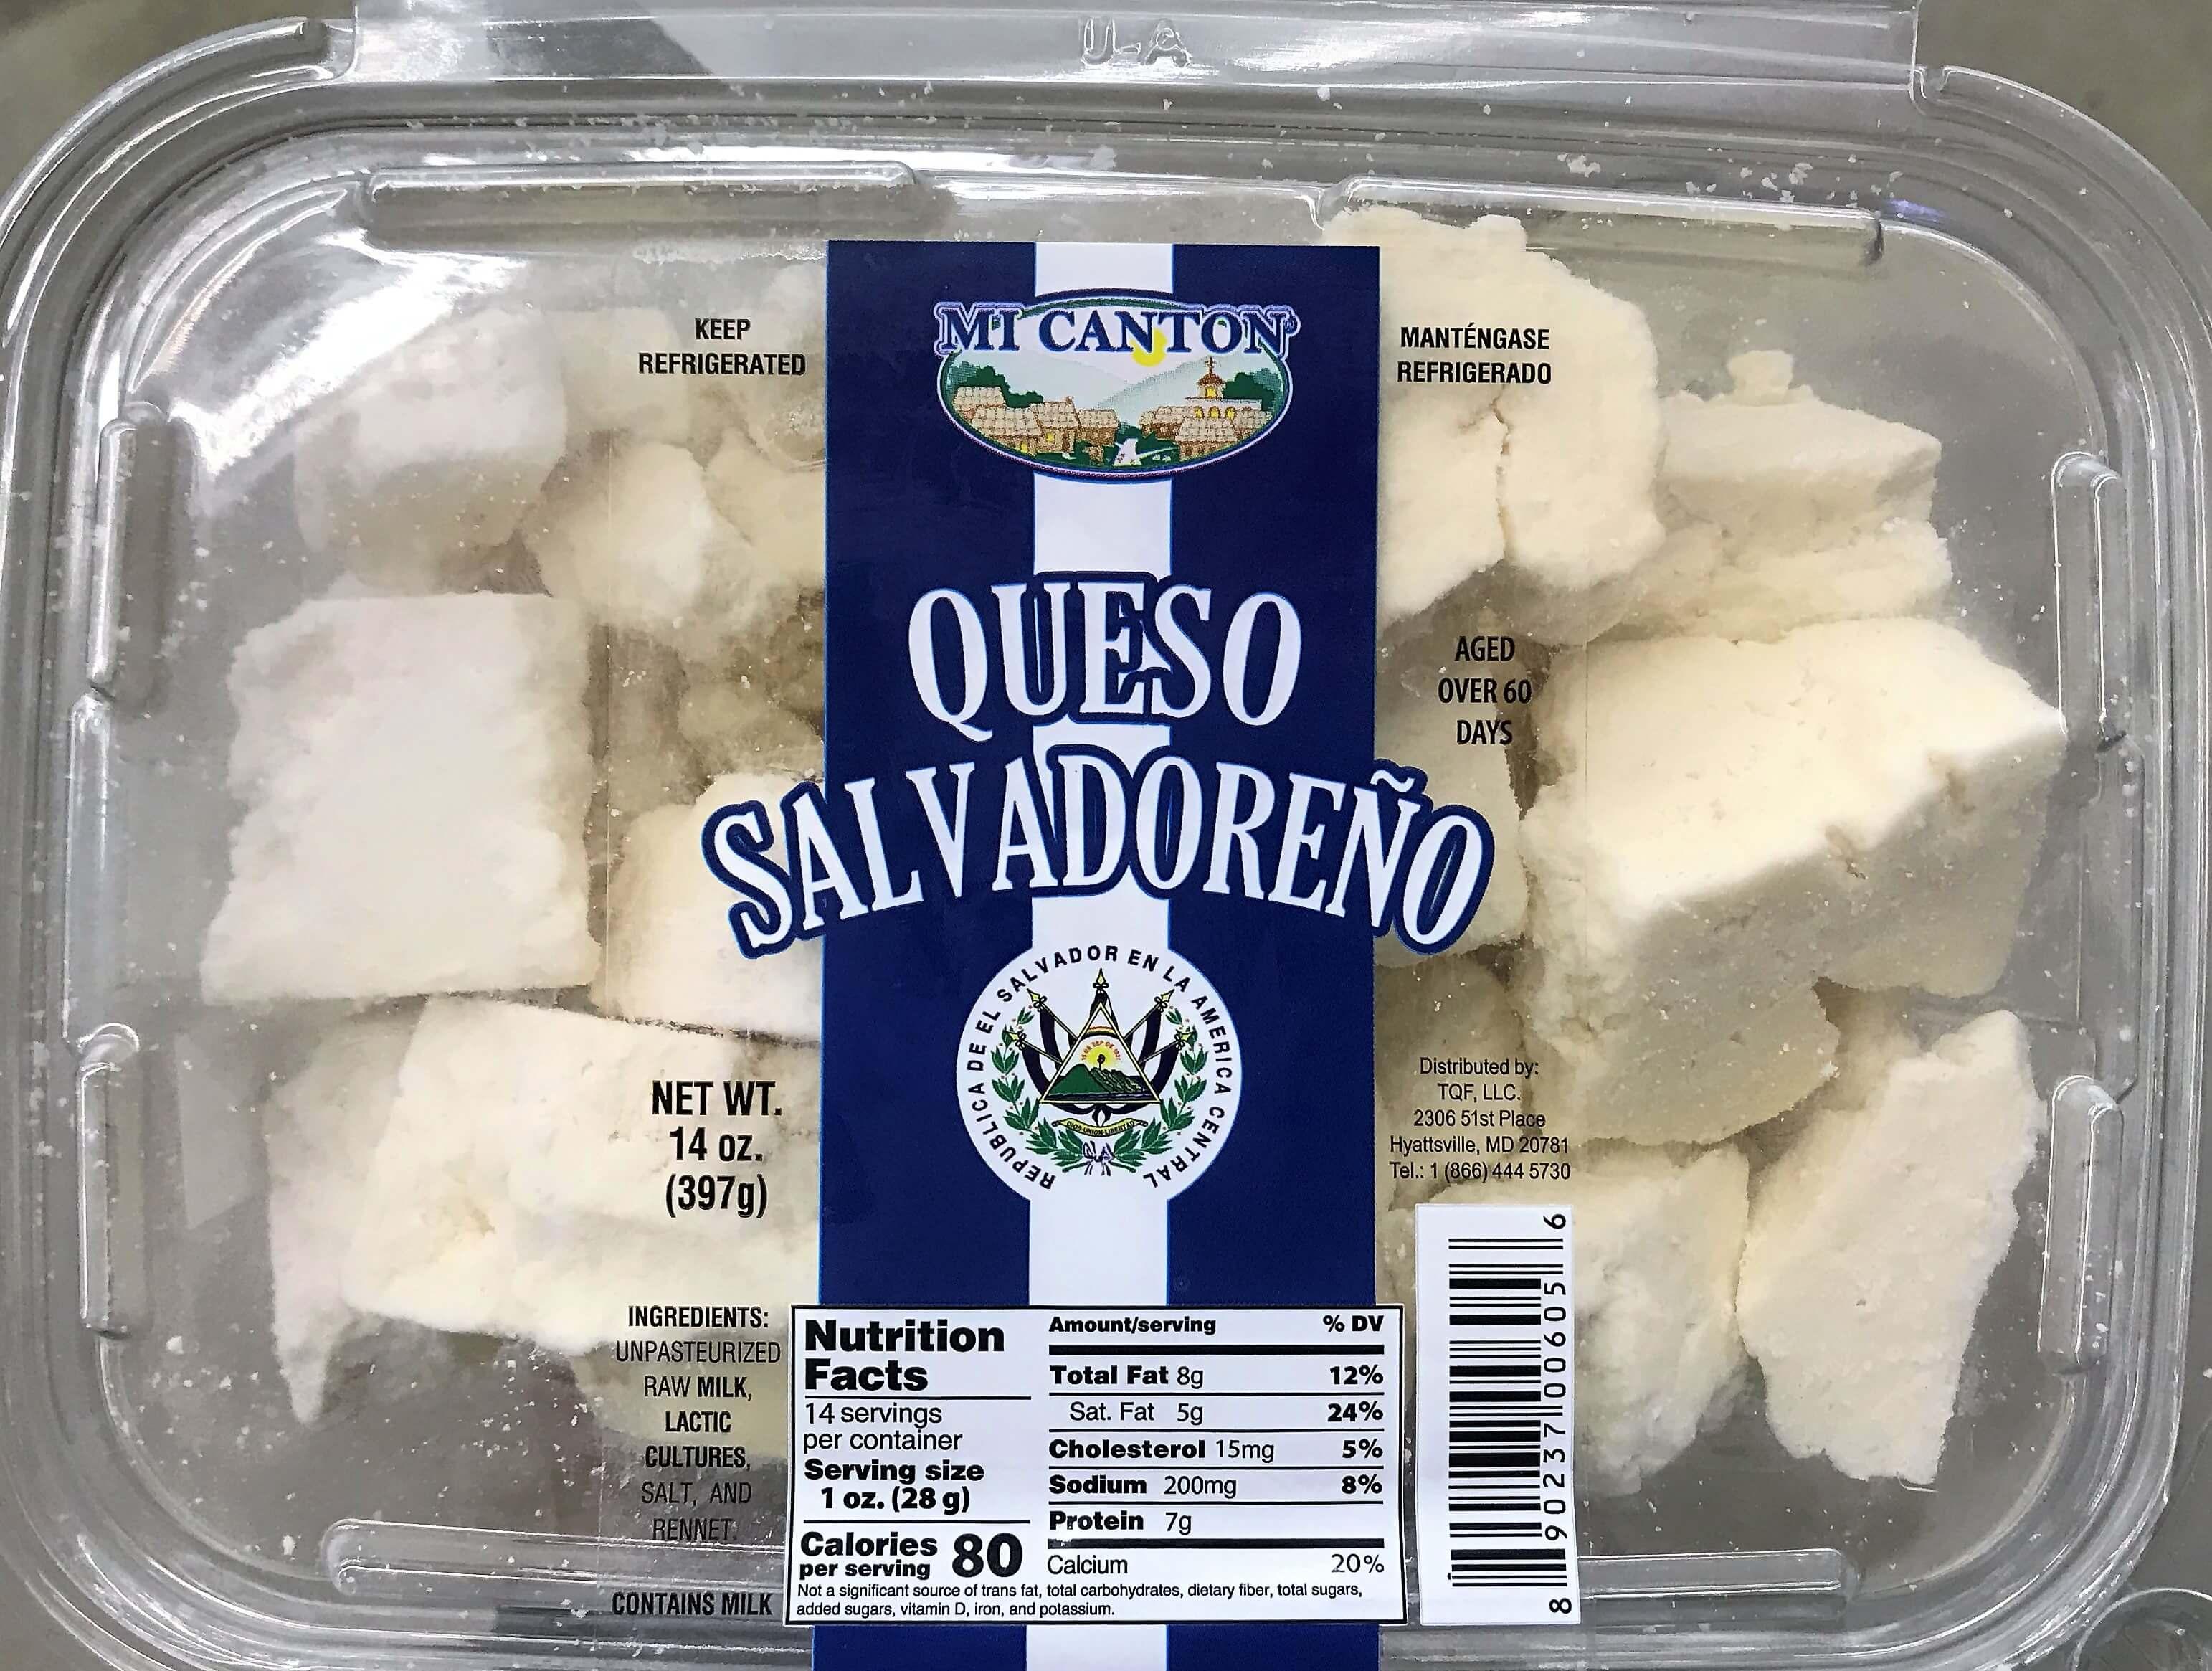 Mi Canton - Salvadoran Cheese 14 oz